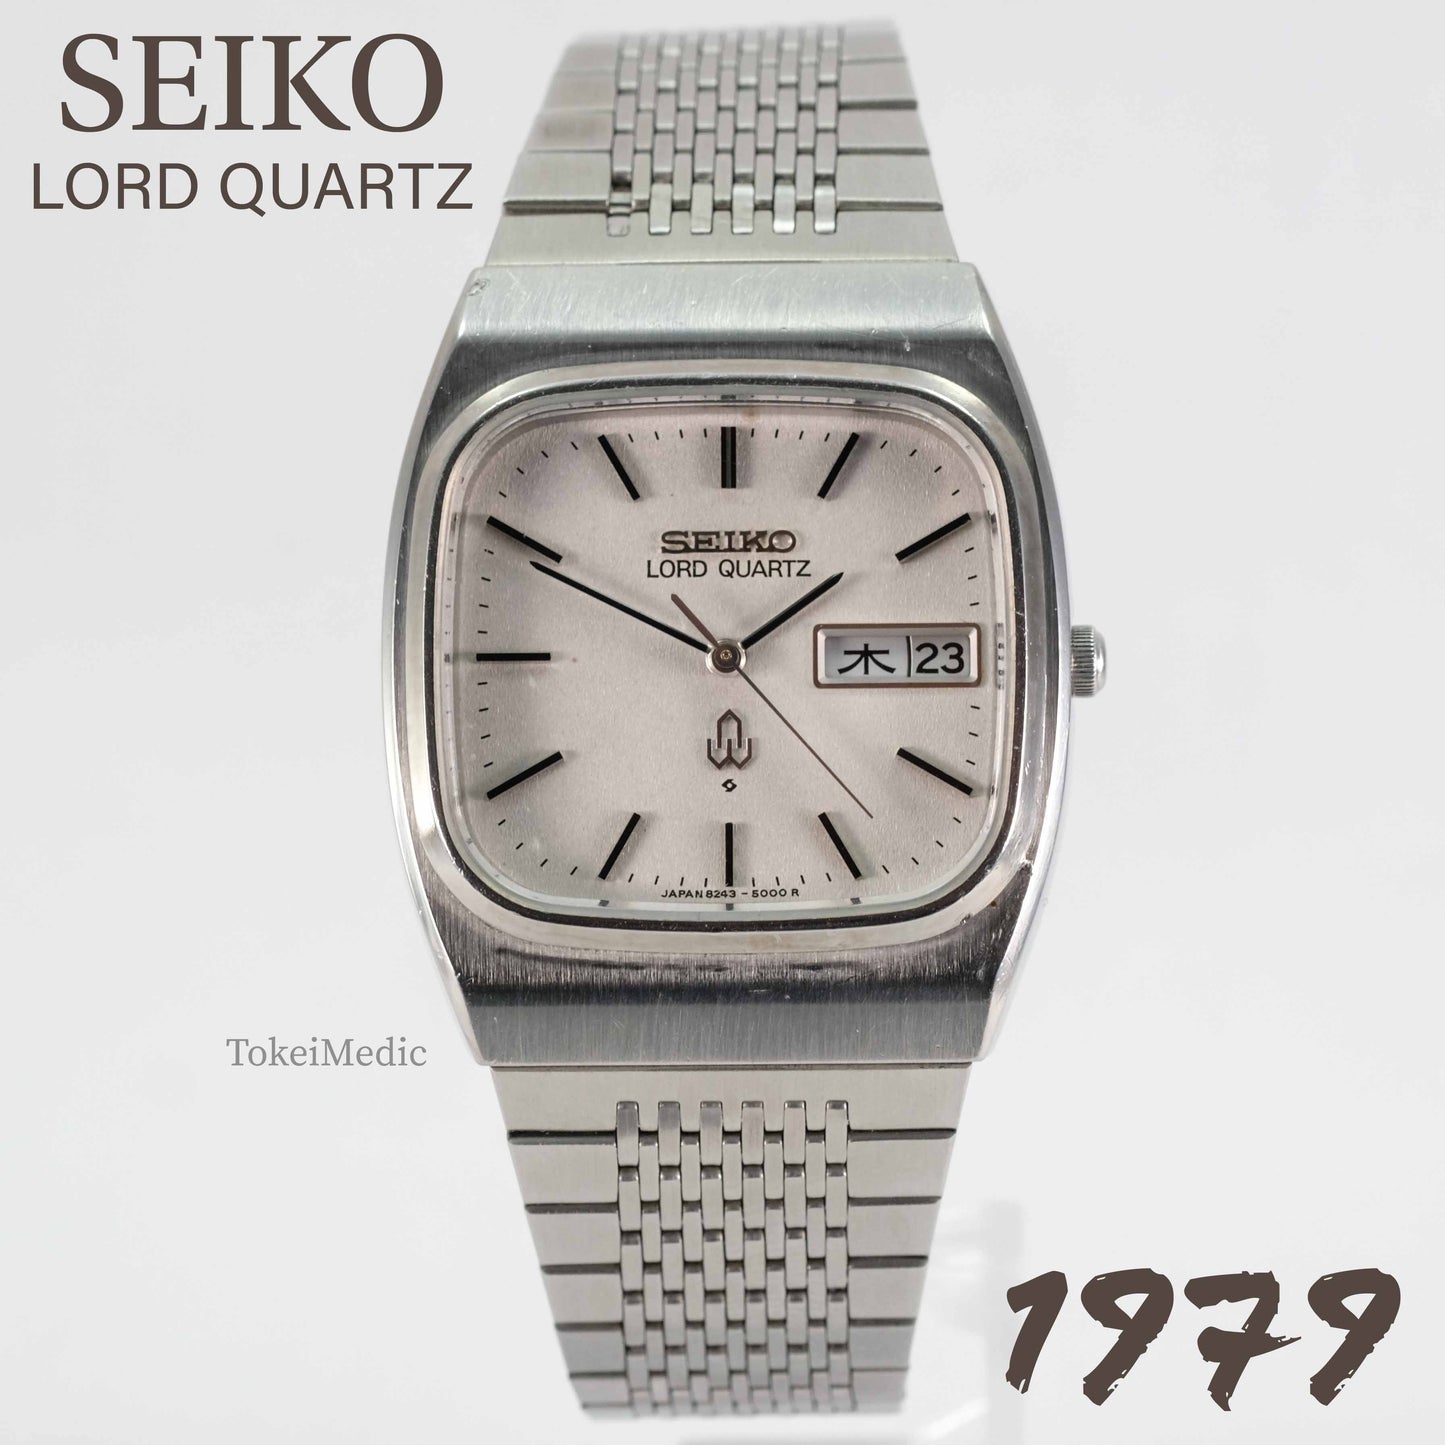 1979 Seiko Lord Quartz 8234-5000